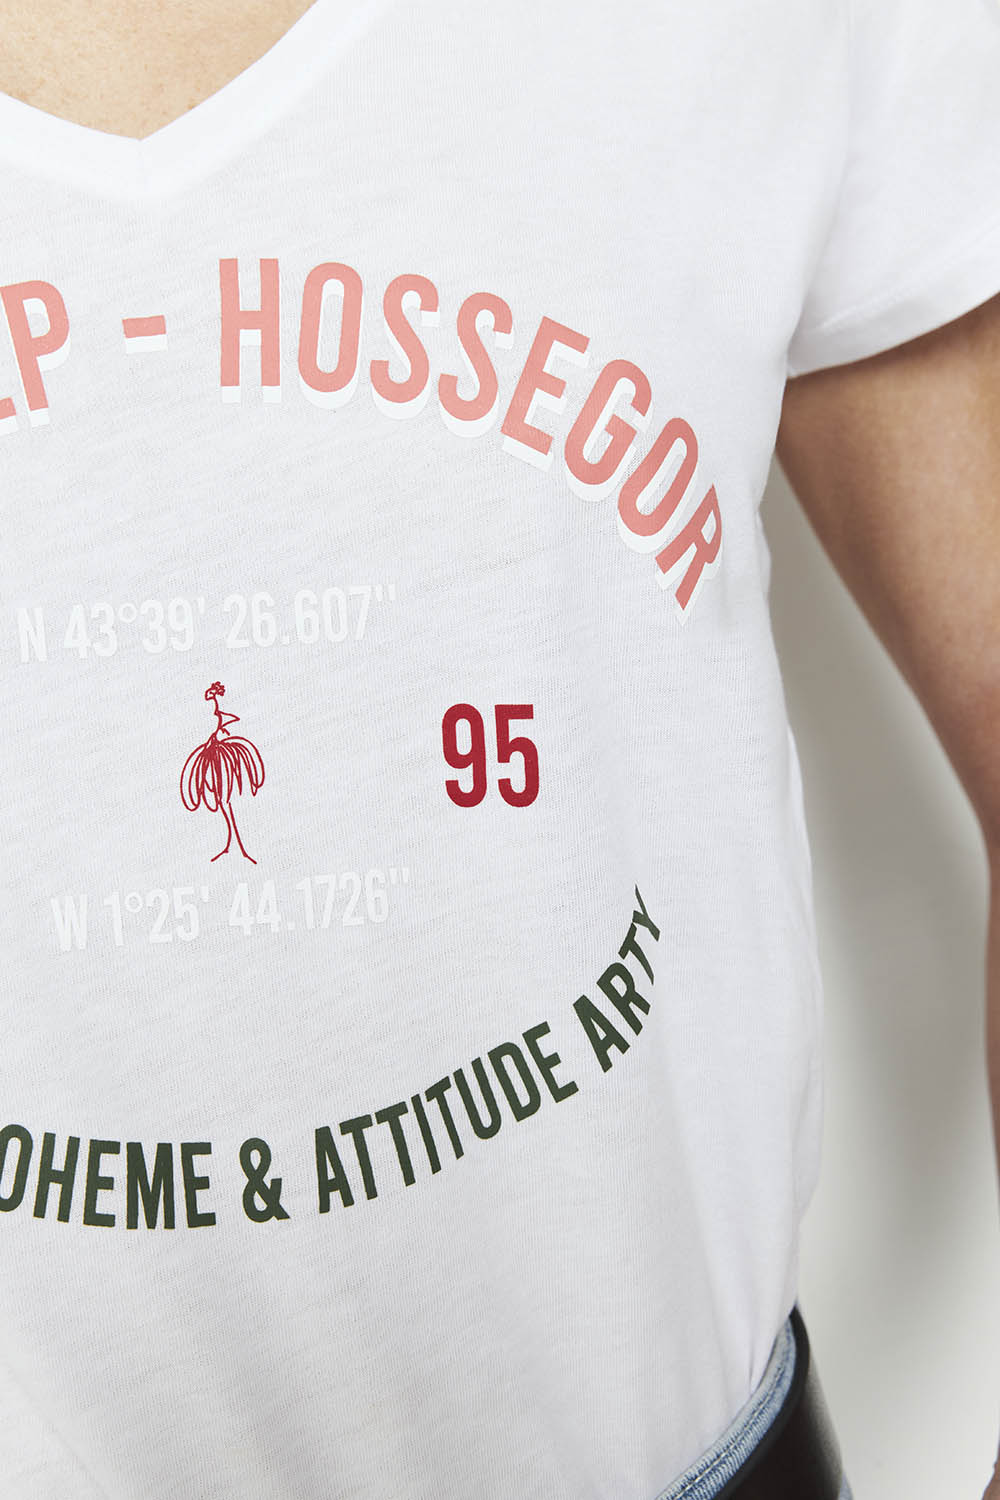 MOOR - T-shirt blanc à message - Hossegor